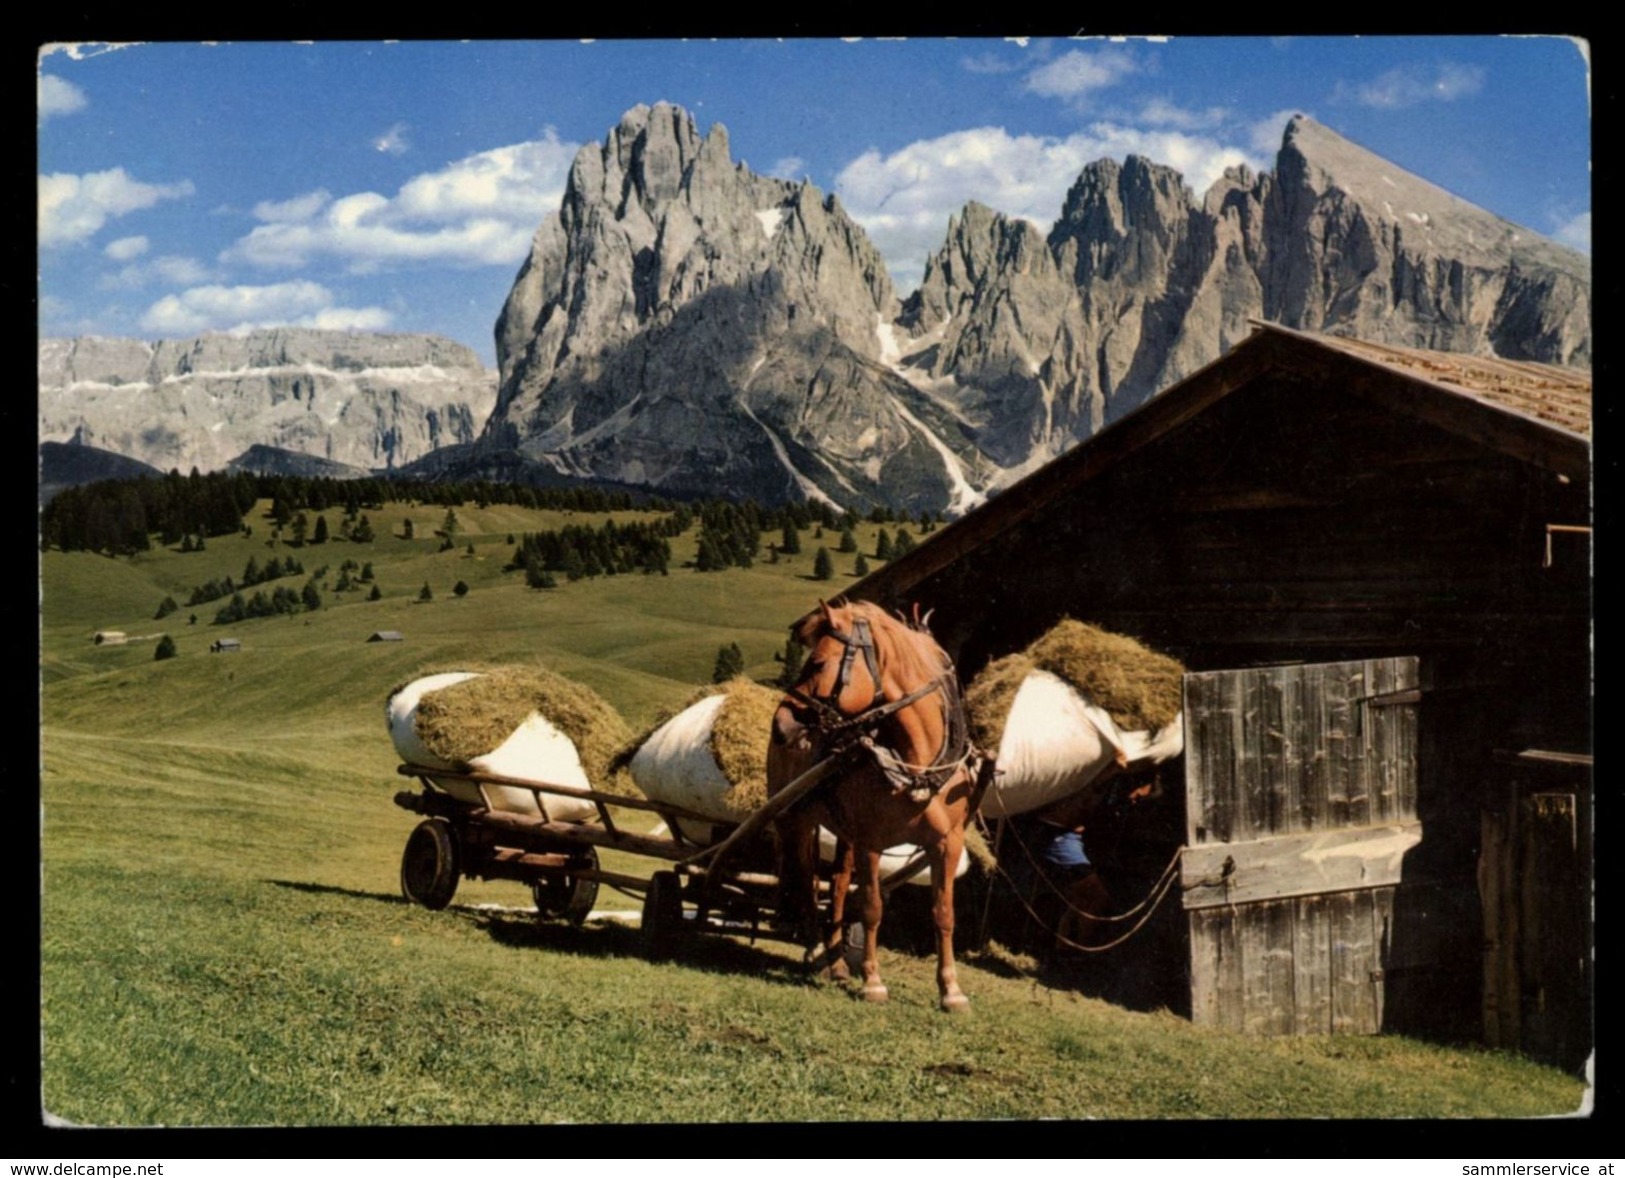 [015] Pferde-Karte 131, Leiterwagen, Seiseralm, Dolomiten, Südtirol, ~1980 - Pferde